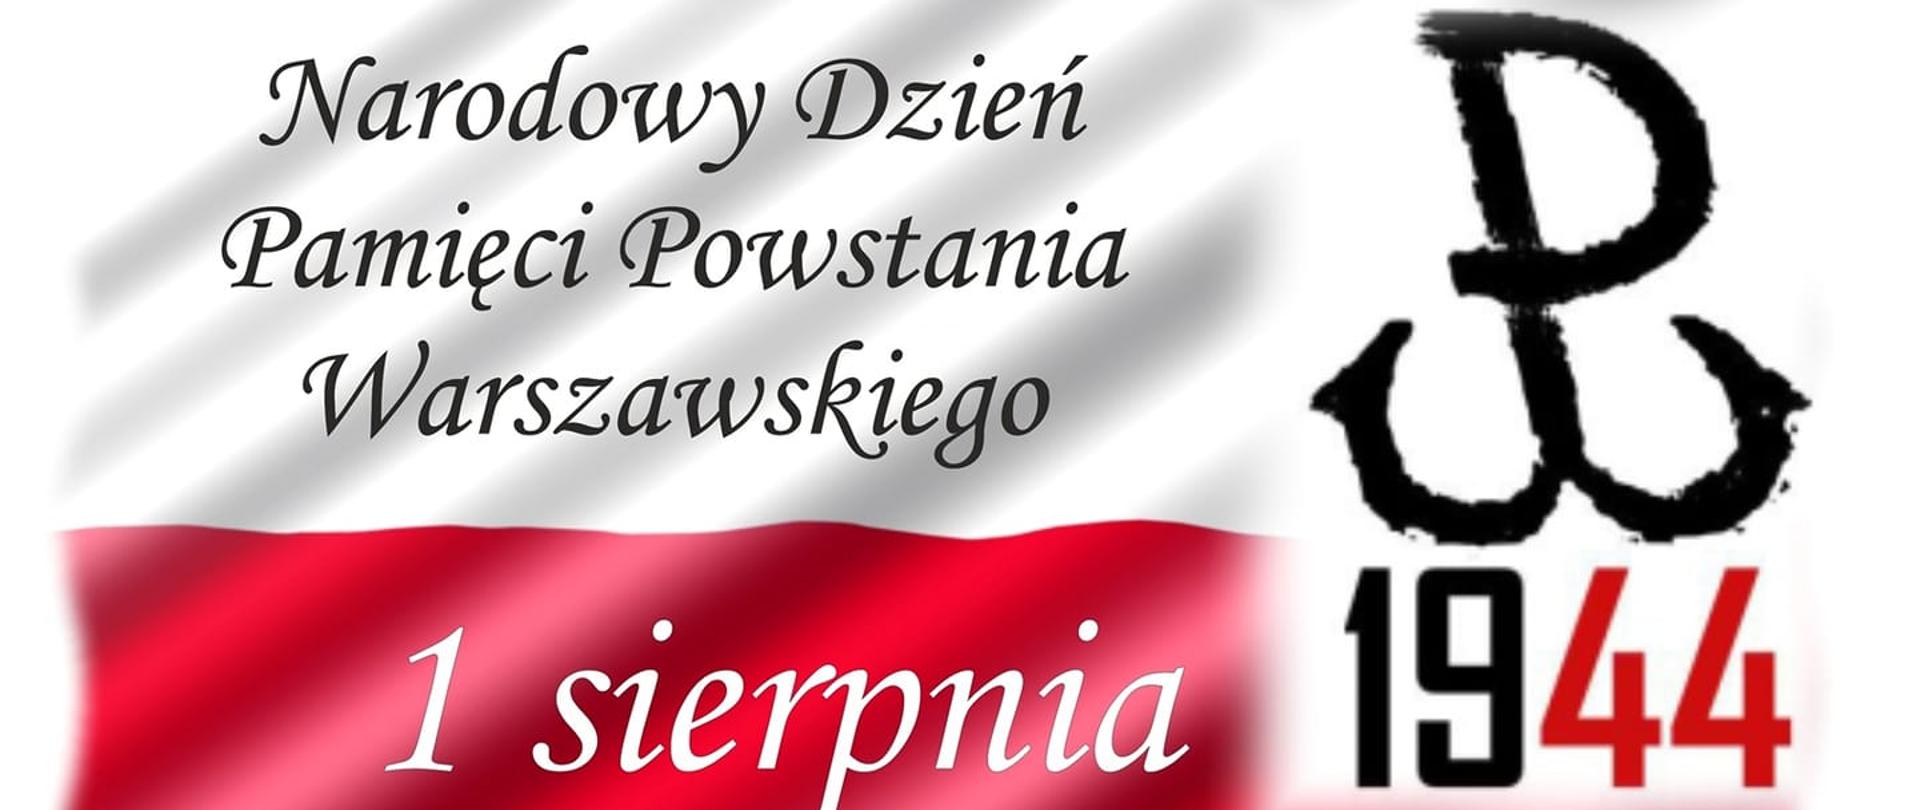 1 sierpnia - Narodowy Dzień Pamięci Powstania Warszawskiego 